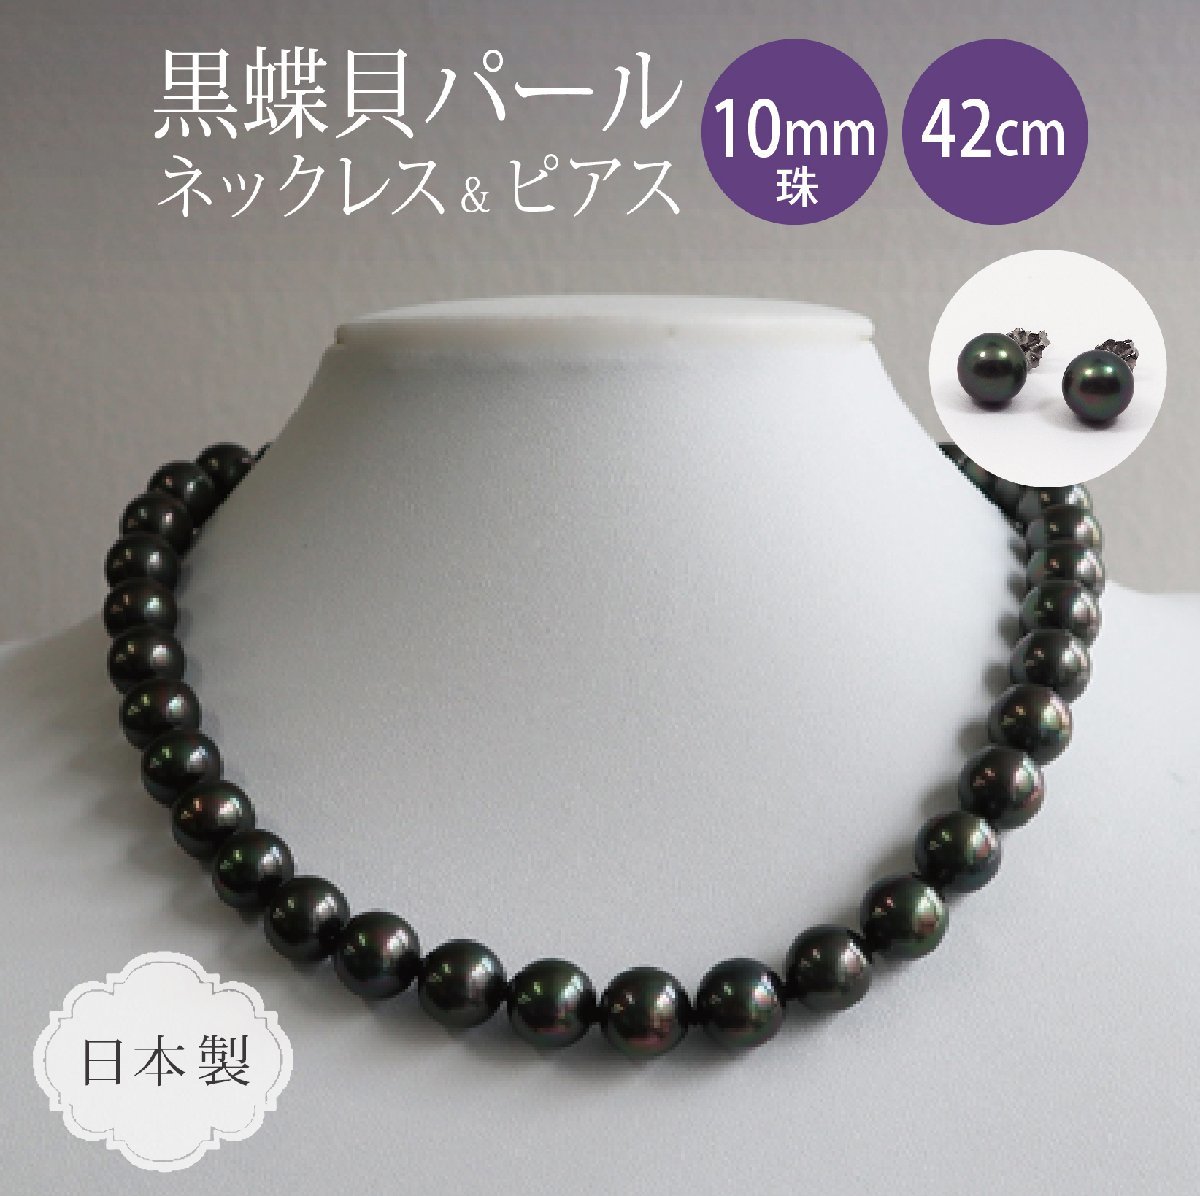 大切な 黒真珠 ネックレス ・ピアス・セット・ピーコック系カラー / 黒